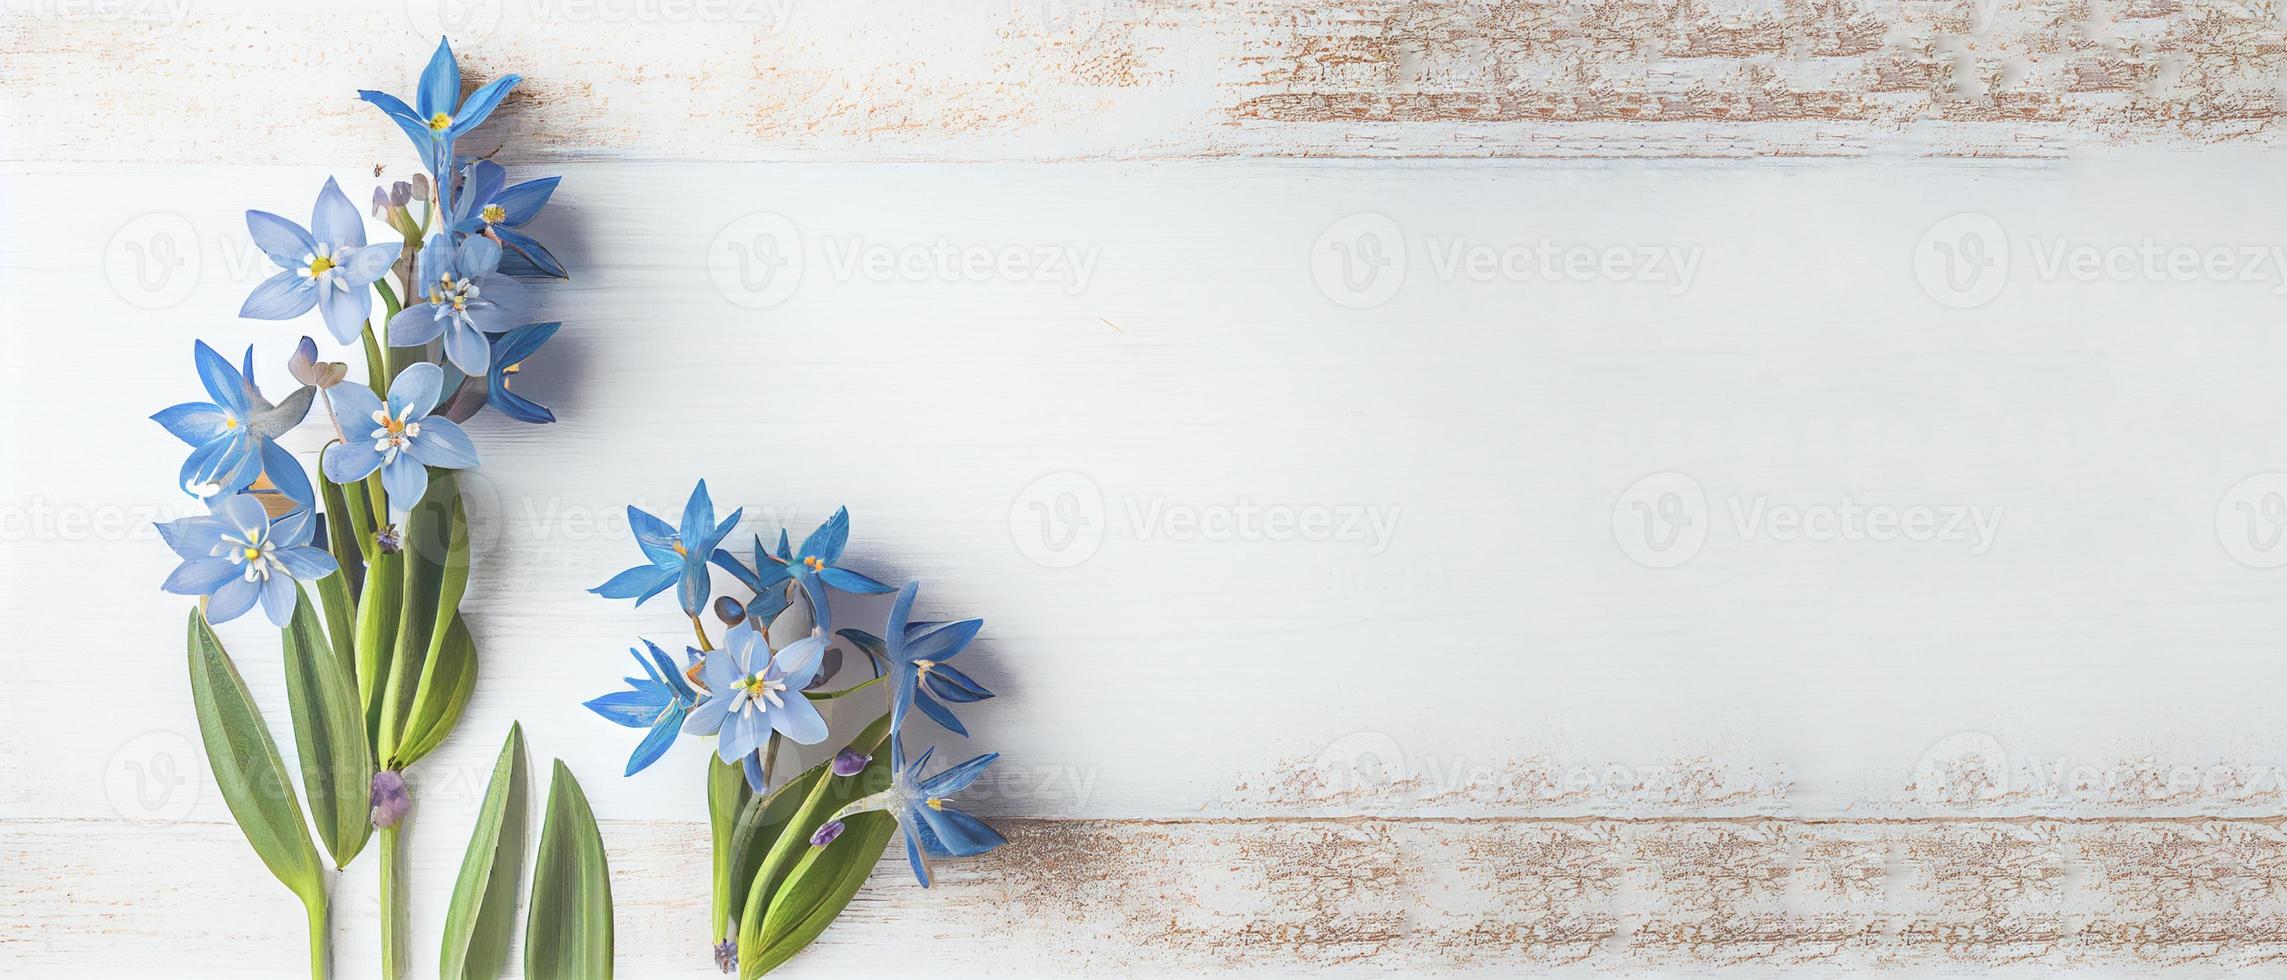 superiore Visualizza blu scilla fiori su bianca di legno sfondo con spazio per testo. primo primavera fiori. saluto carta per San Valentino giorno, donna di giorno e La madre di giorno foto